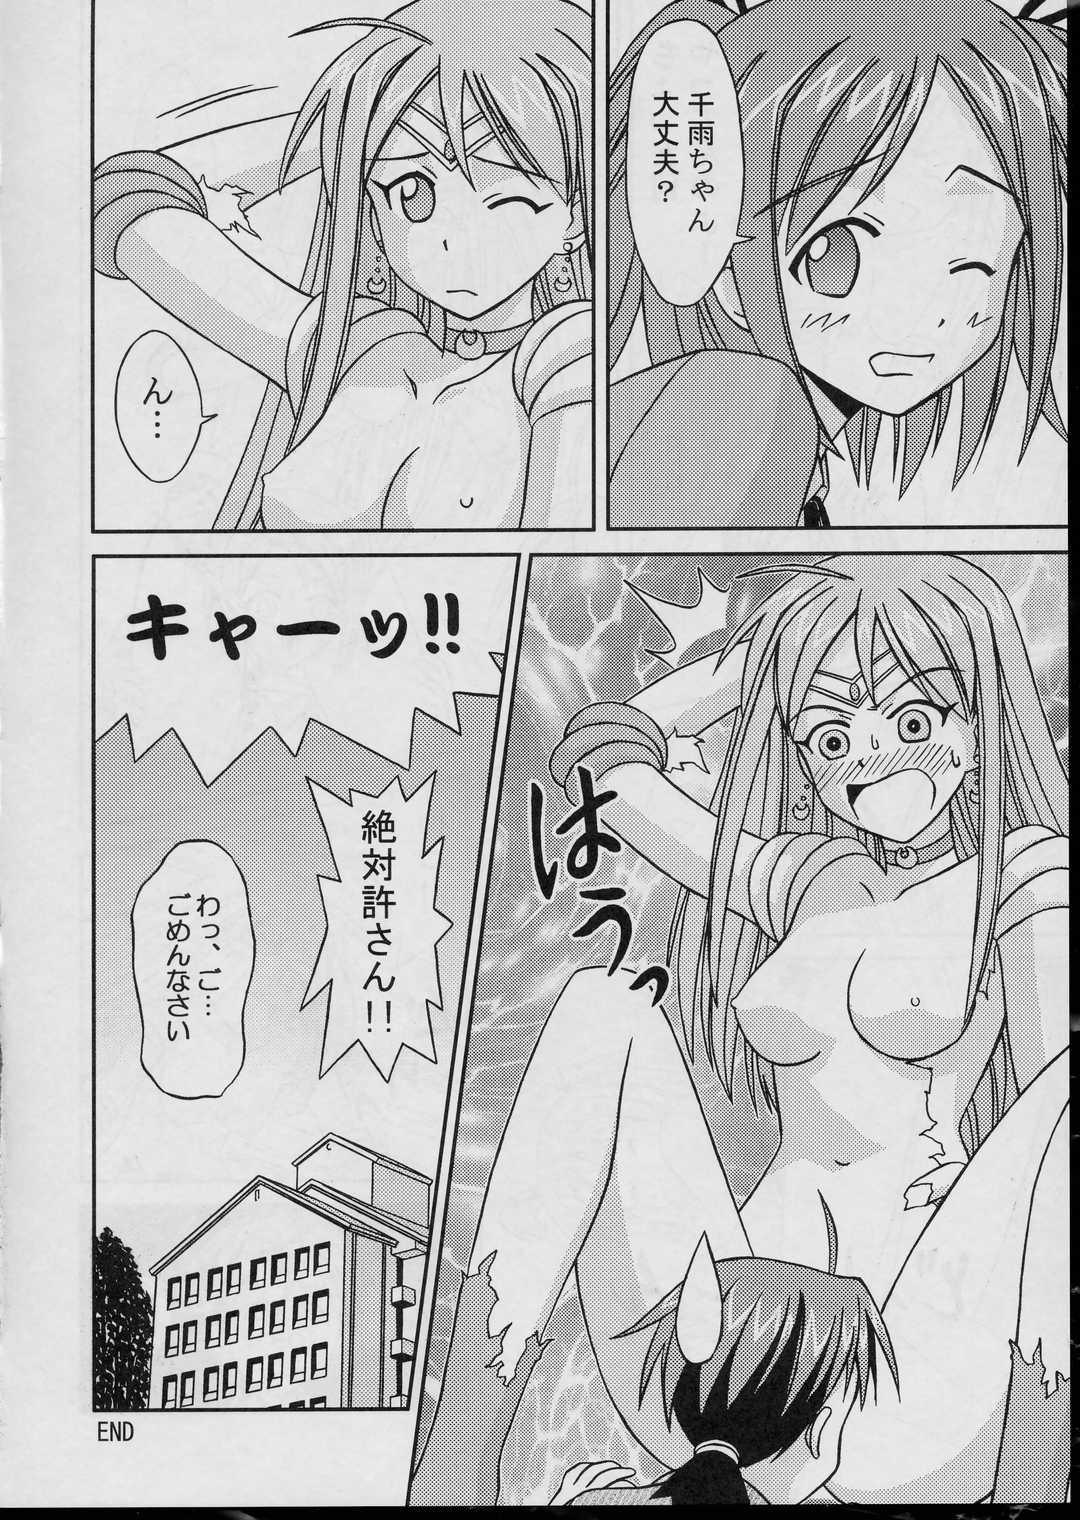 Wrestling Negima Chick Factory - Mahou sensei negima Flaquita - Page 11